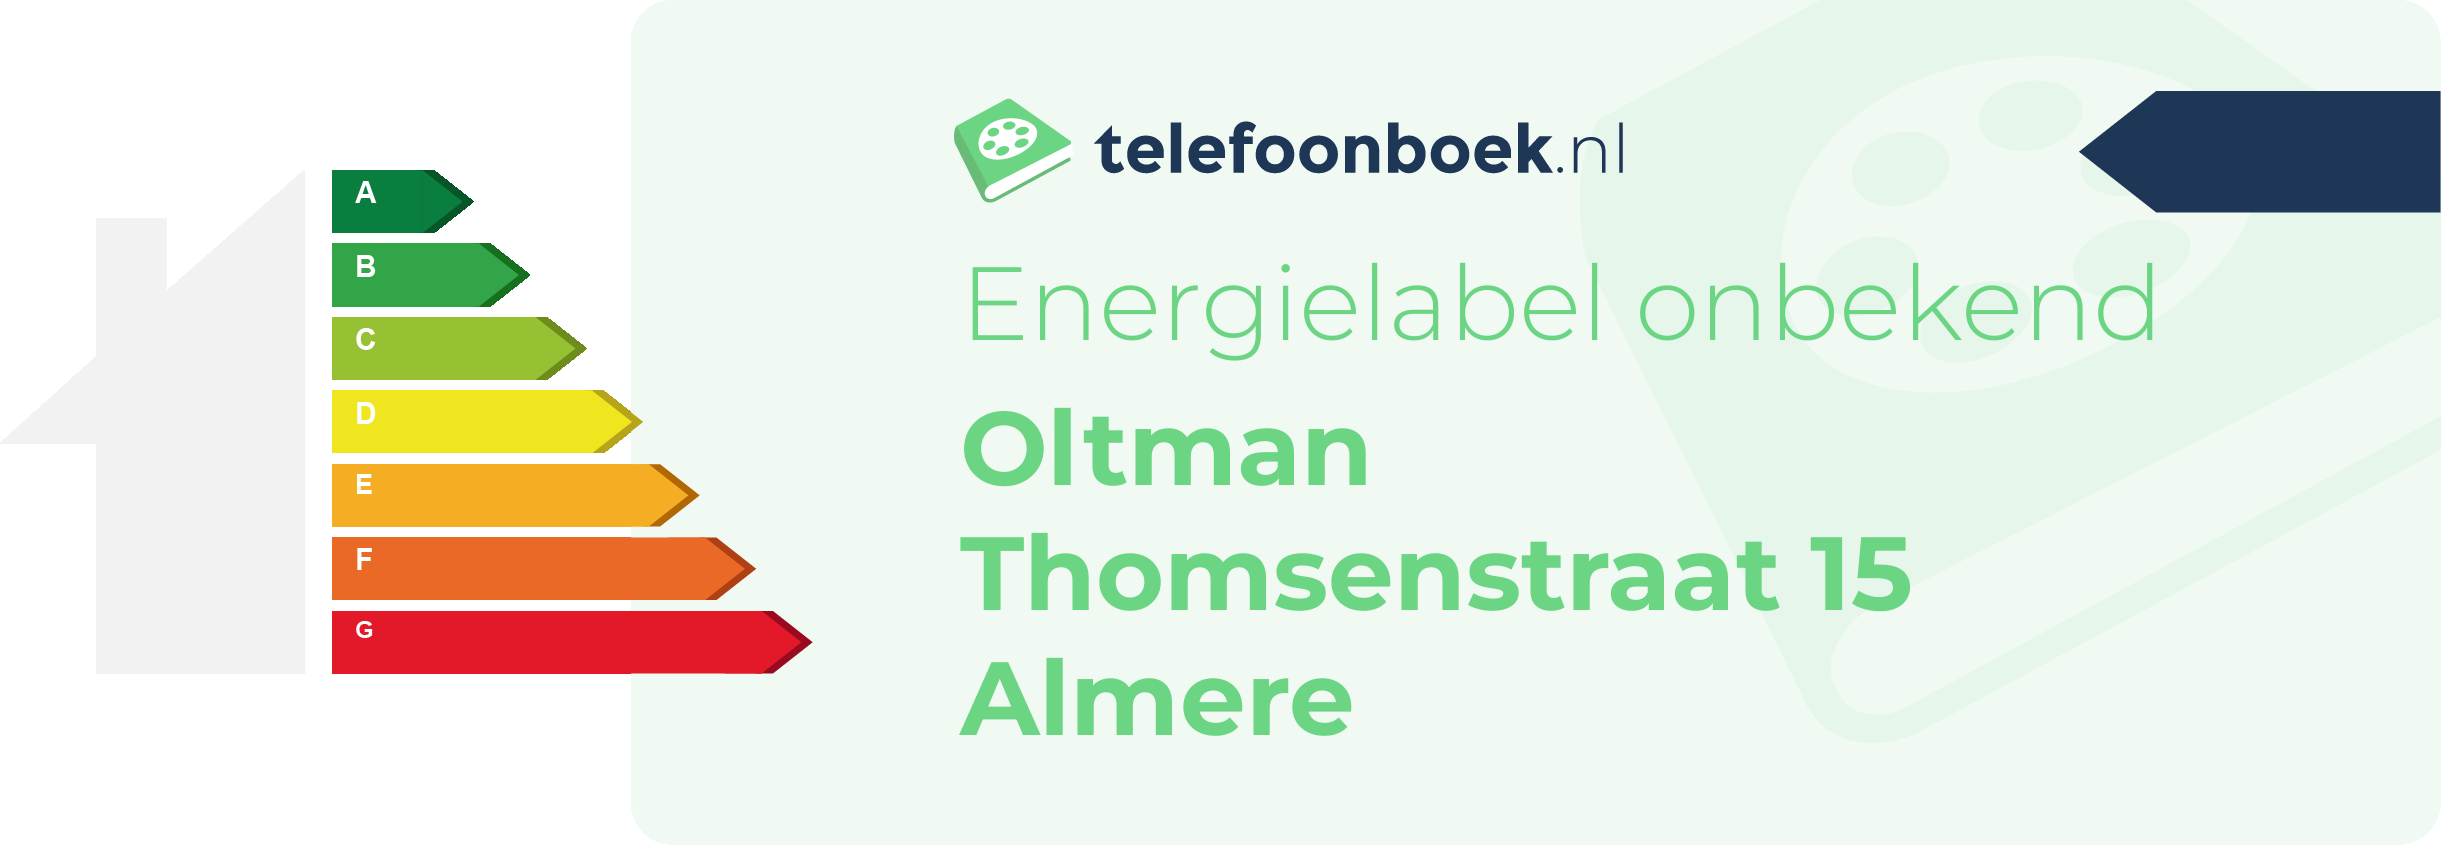 Energielabel Oltman Thomsenstraat 15 Almere